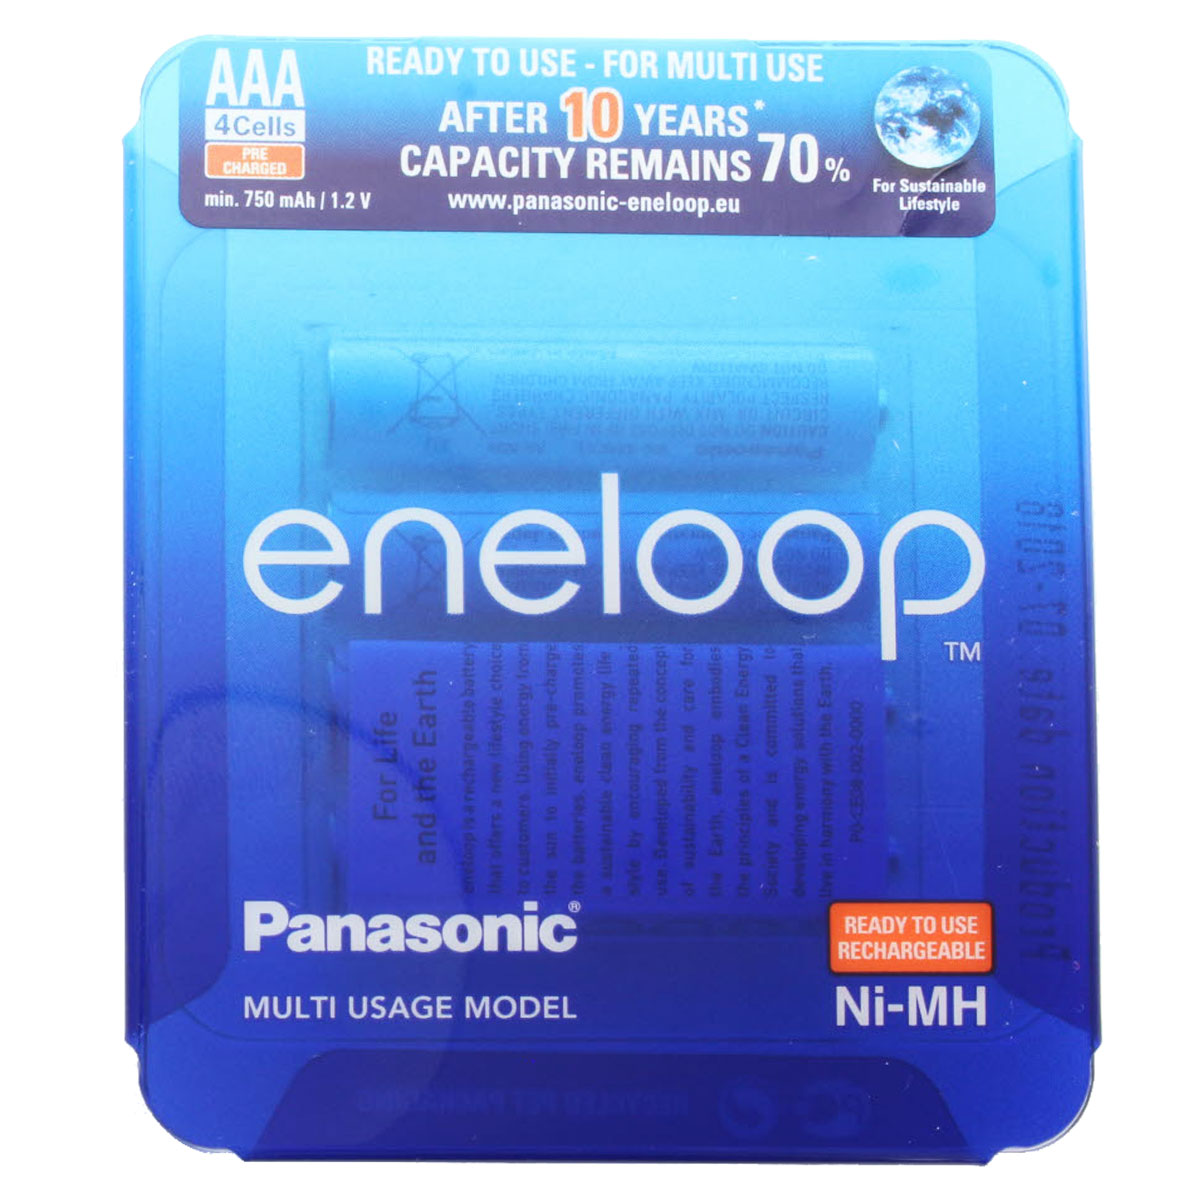 Panasonic eneloop Standard (ehem. Sanyo eneloop Standard) Akku Micro AAA HR-4UTGA 800mAh 4er Pack